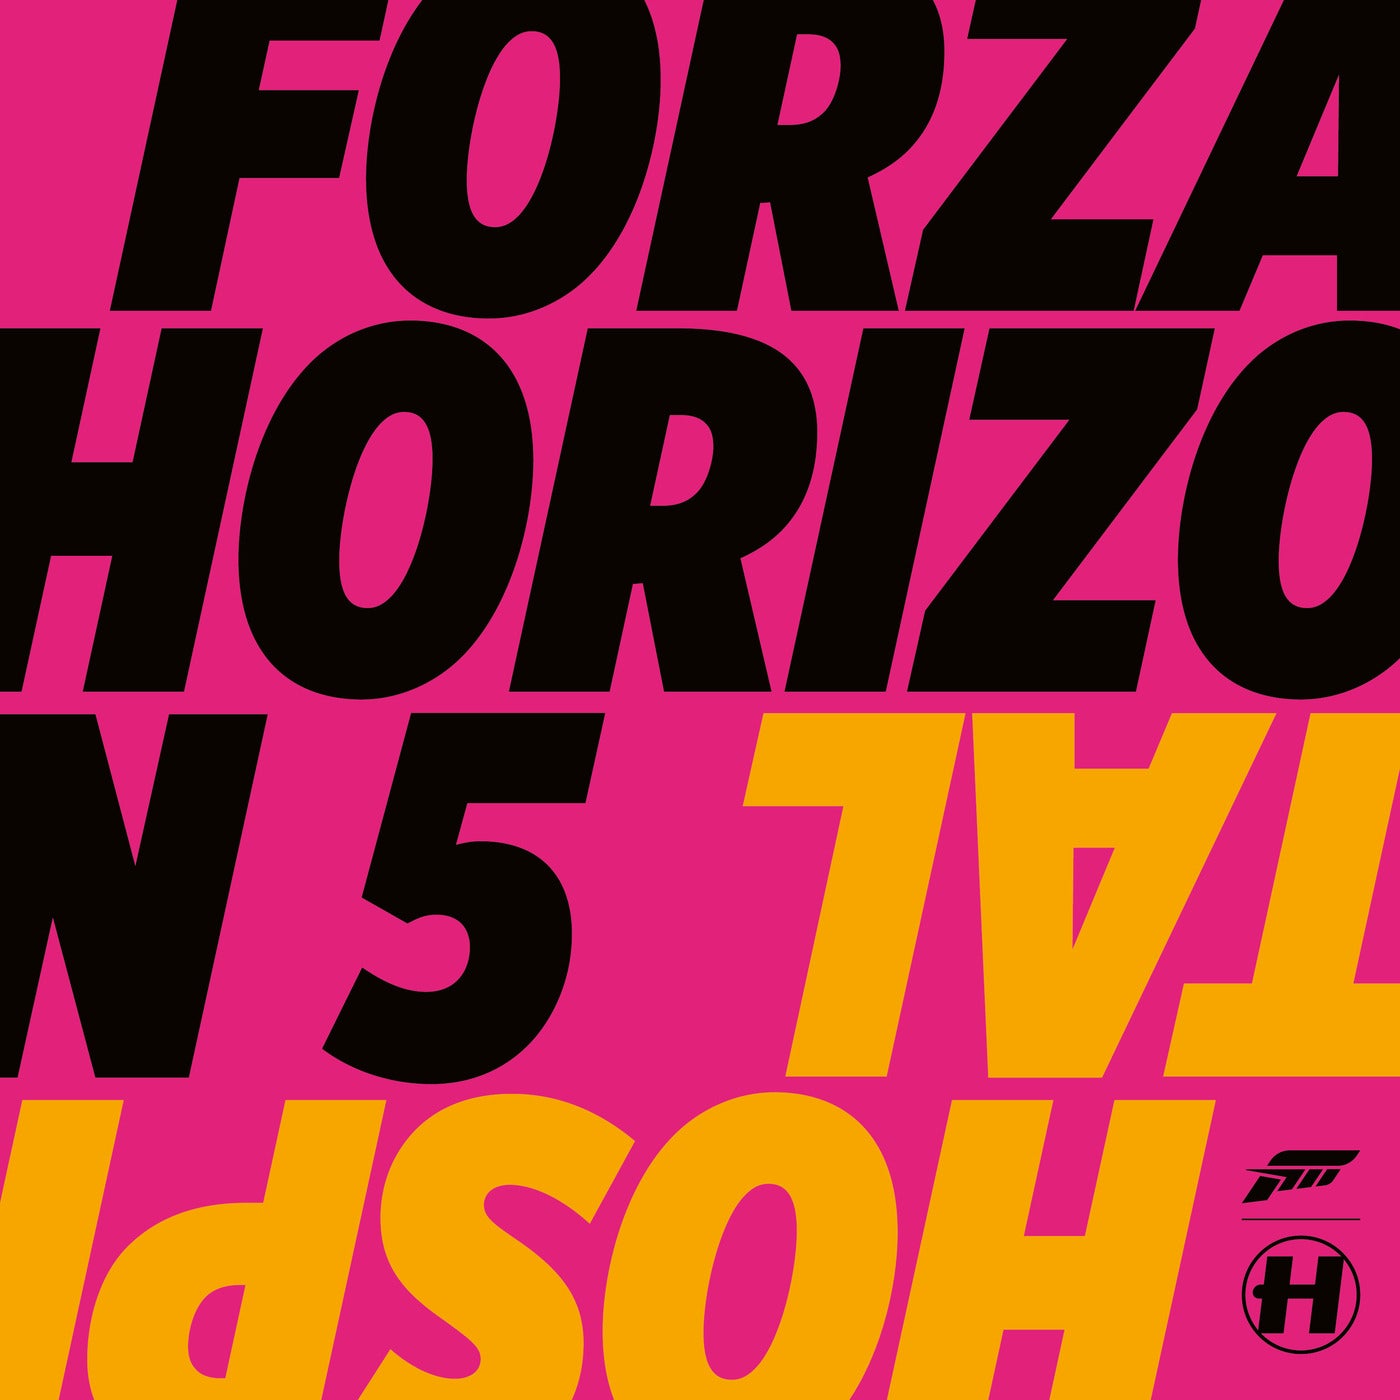 VA – Forza Horizon 5 – Hospital Soundtrack